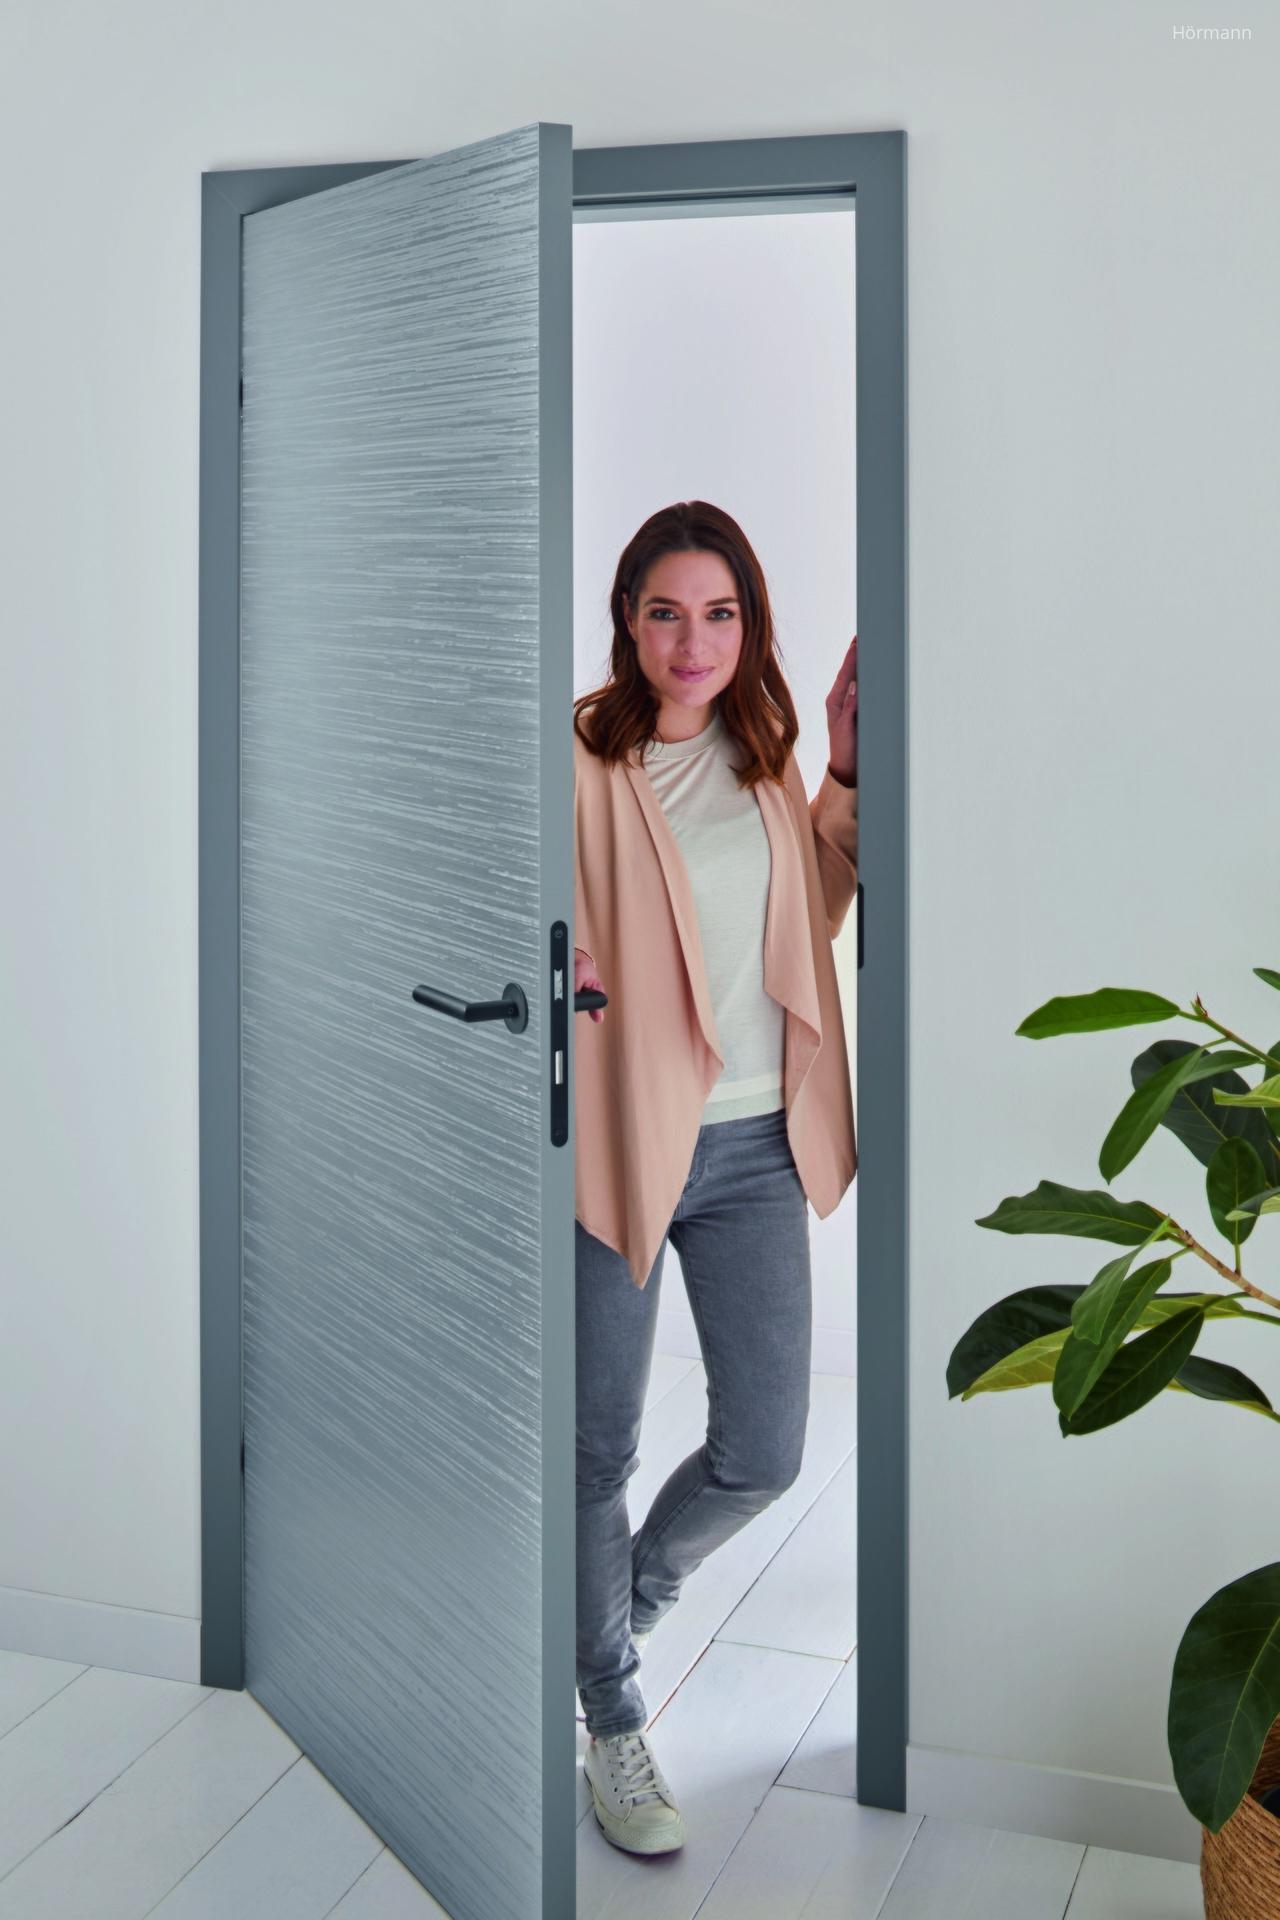 Design beltéri ajtó - előszoba ötlet, modern stílusban